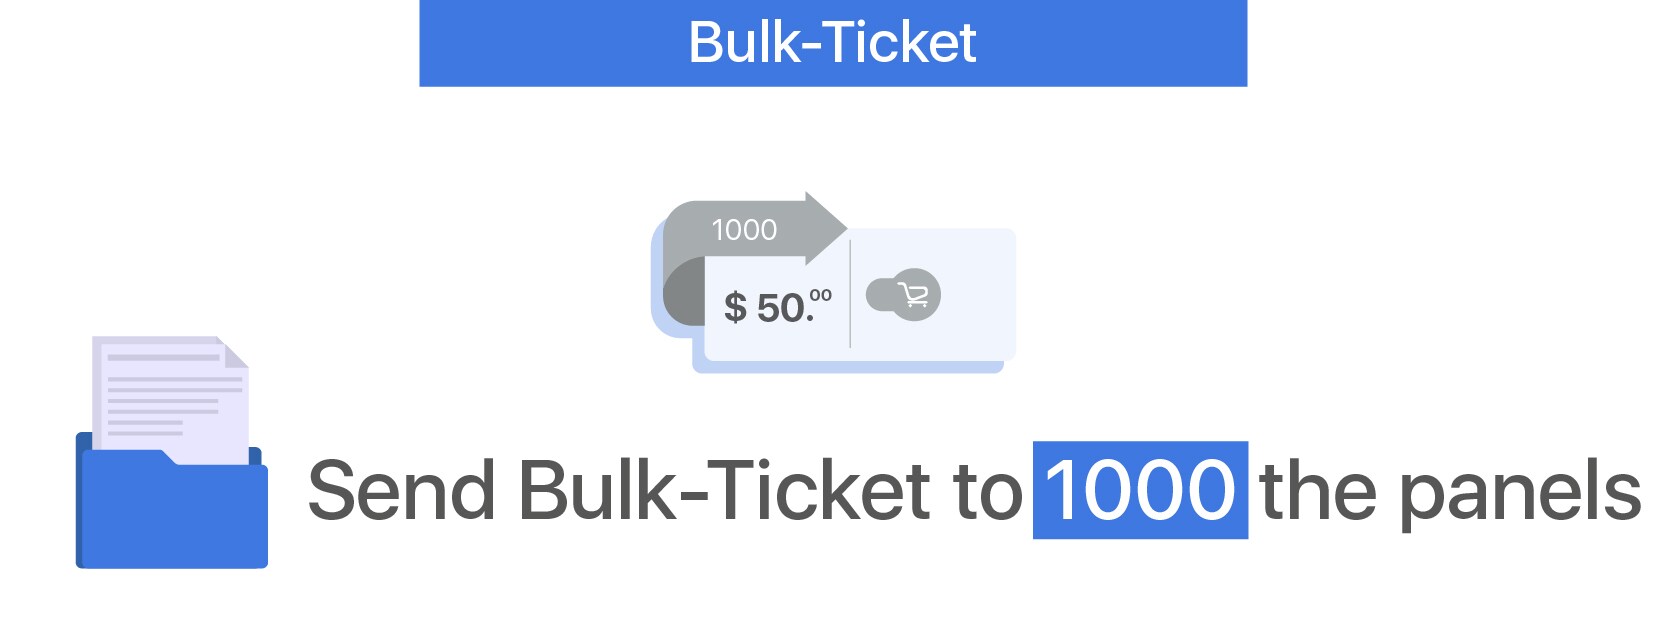 Bulk-Ticket - 1000 Panels